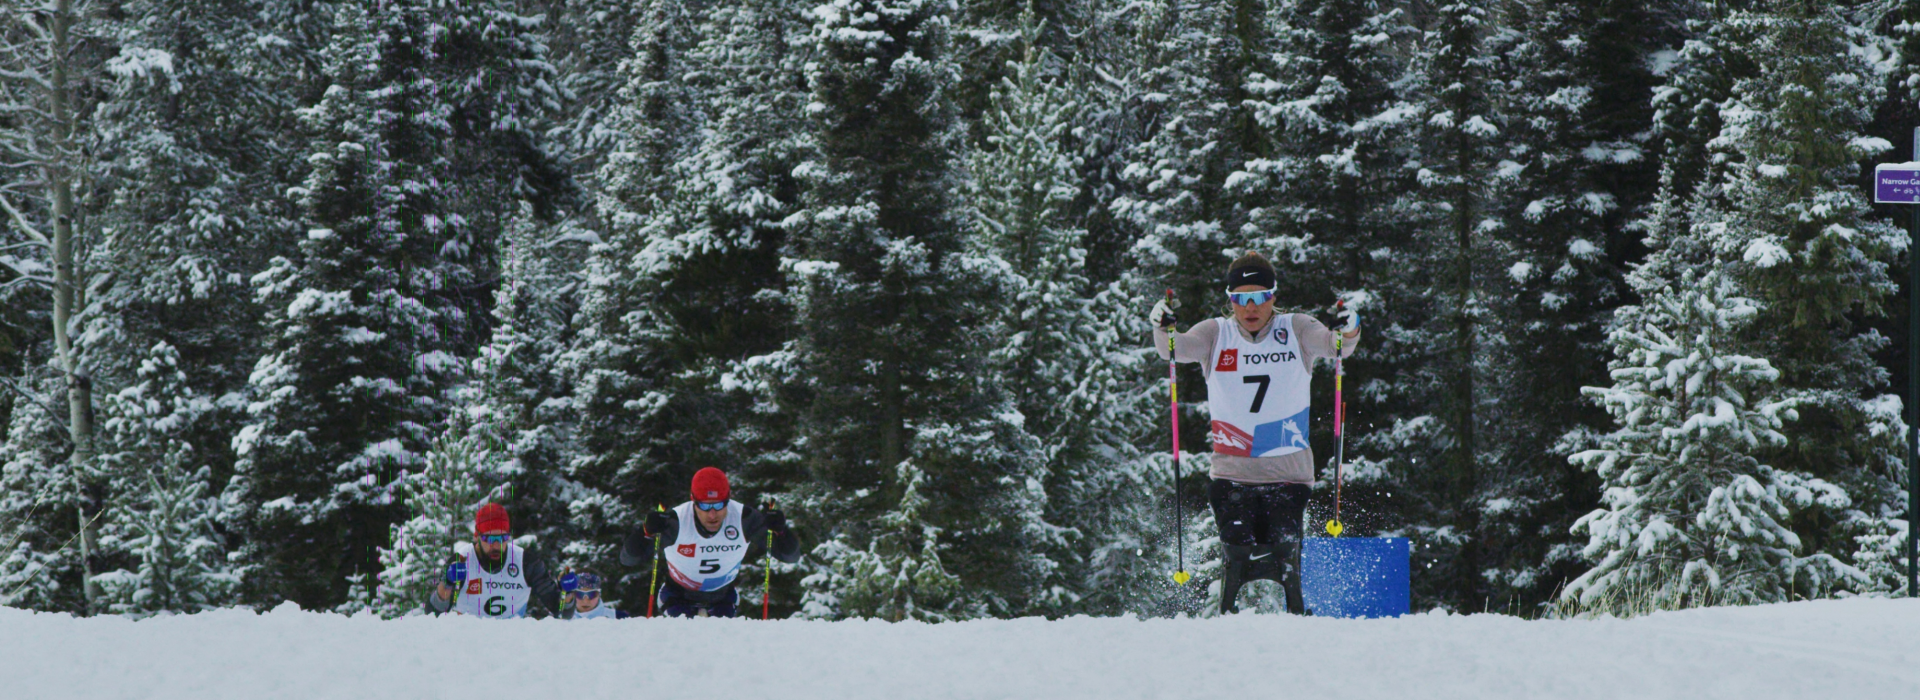 Oksana Masters in sit ski skiing in snow